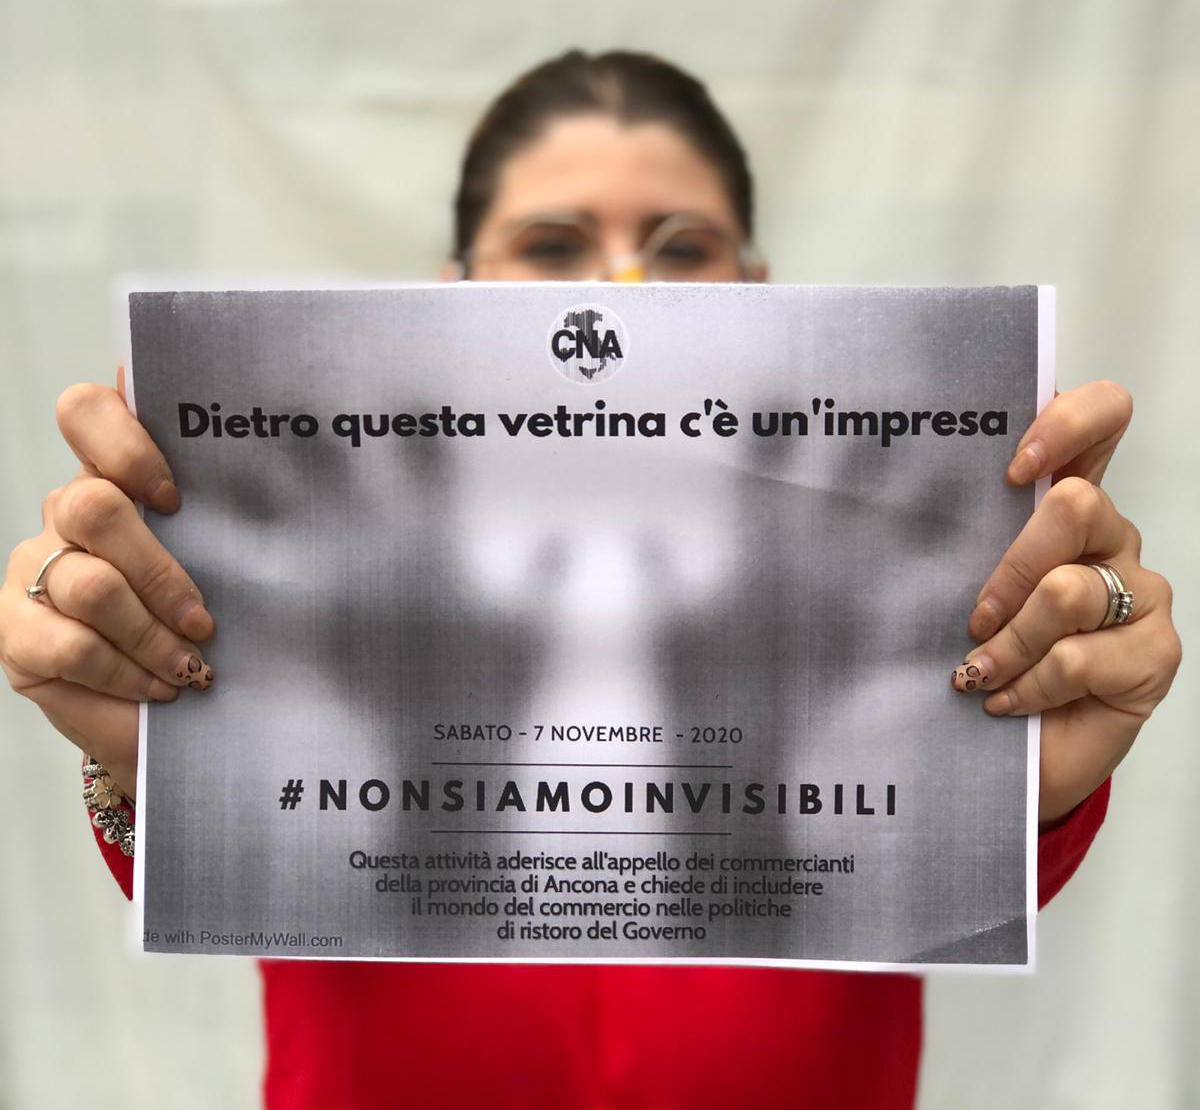 Foto slogan dell'iniziativa Cna "non siamo invisibili"